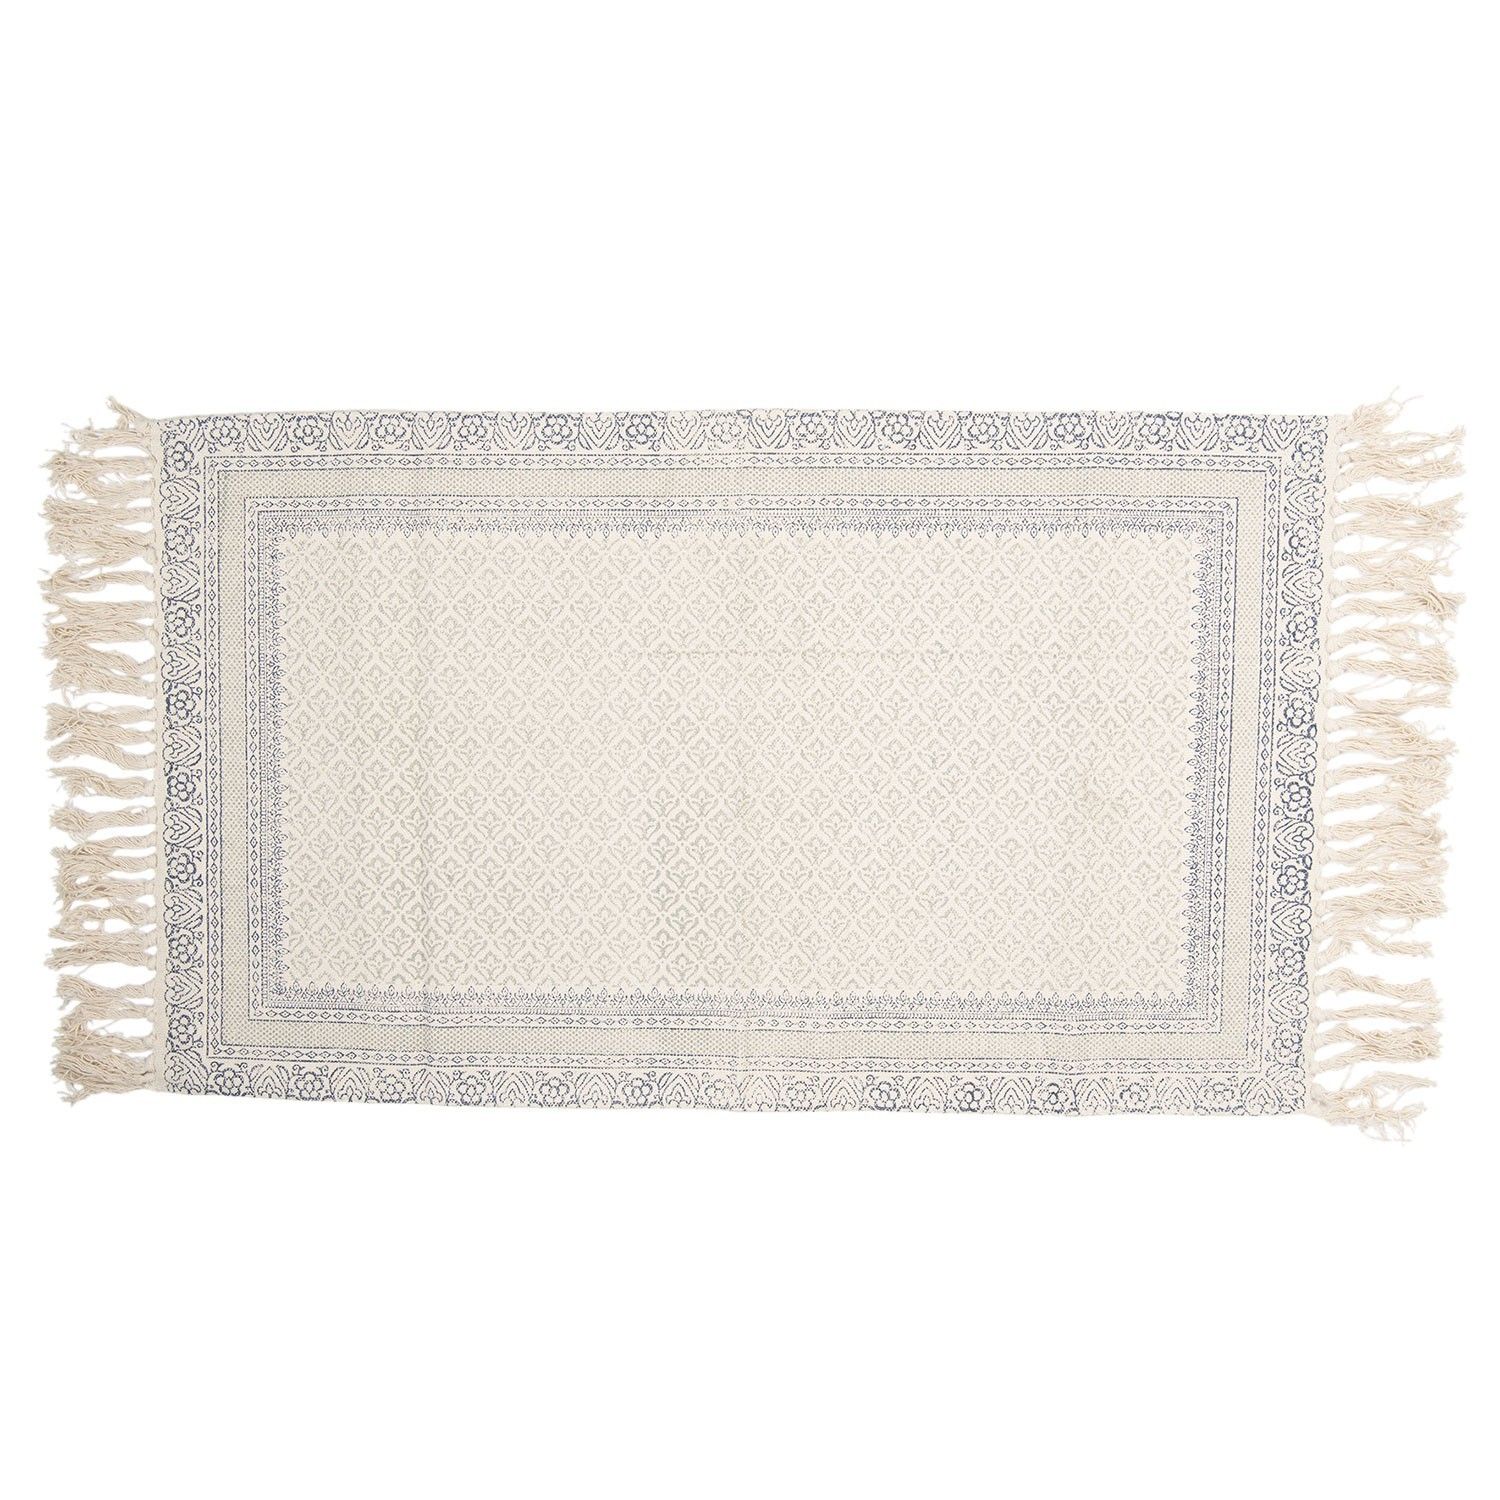 Krémový bavlnený koberec s šedými ornamentami - 70 * 120 cm